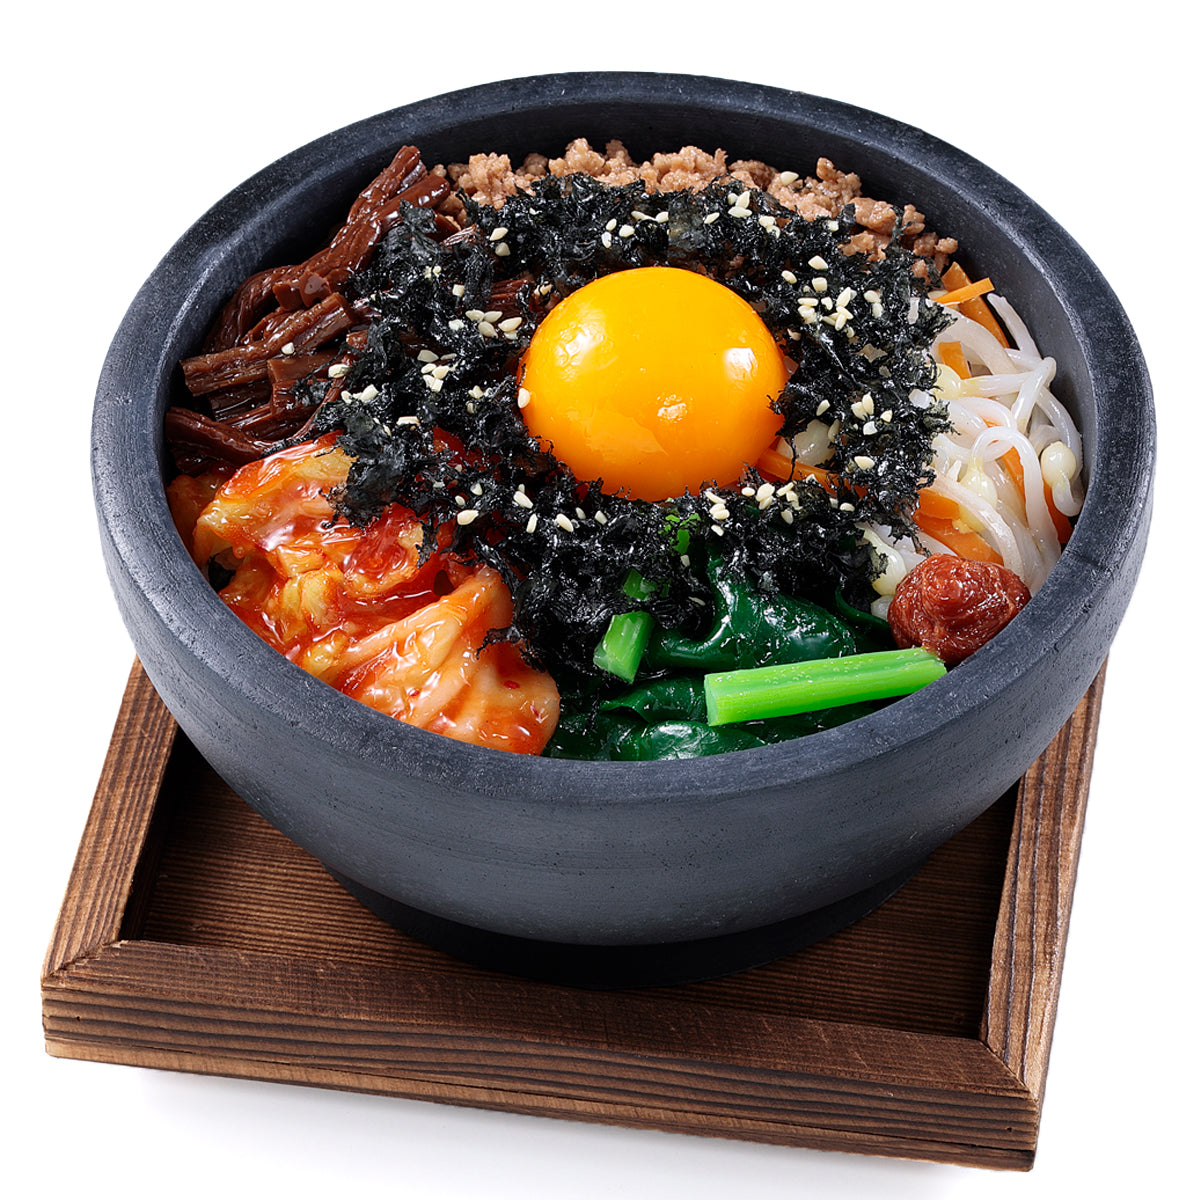 オリジナル食品サンプル「ビビンバ」の商品画像です。(英語表記) Korean mixed rice / bibim-bap / 비빔밥 샘플